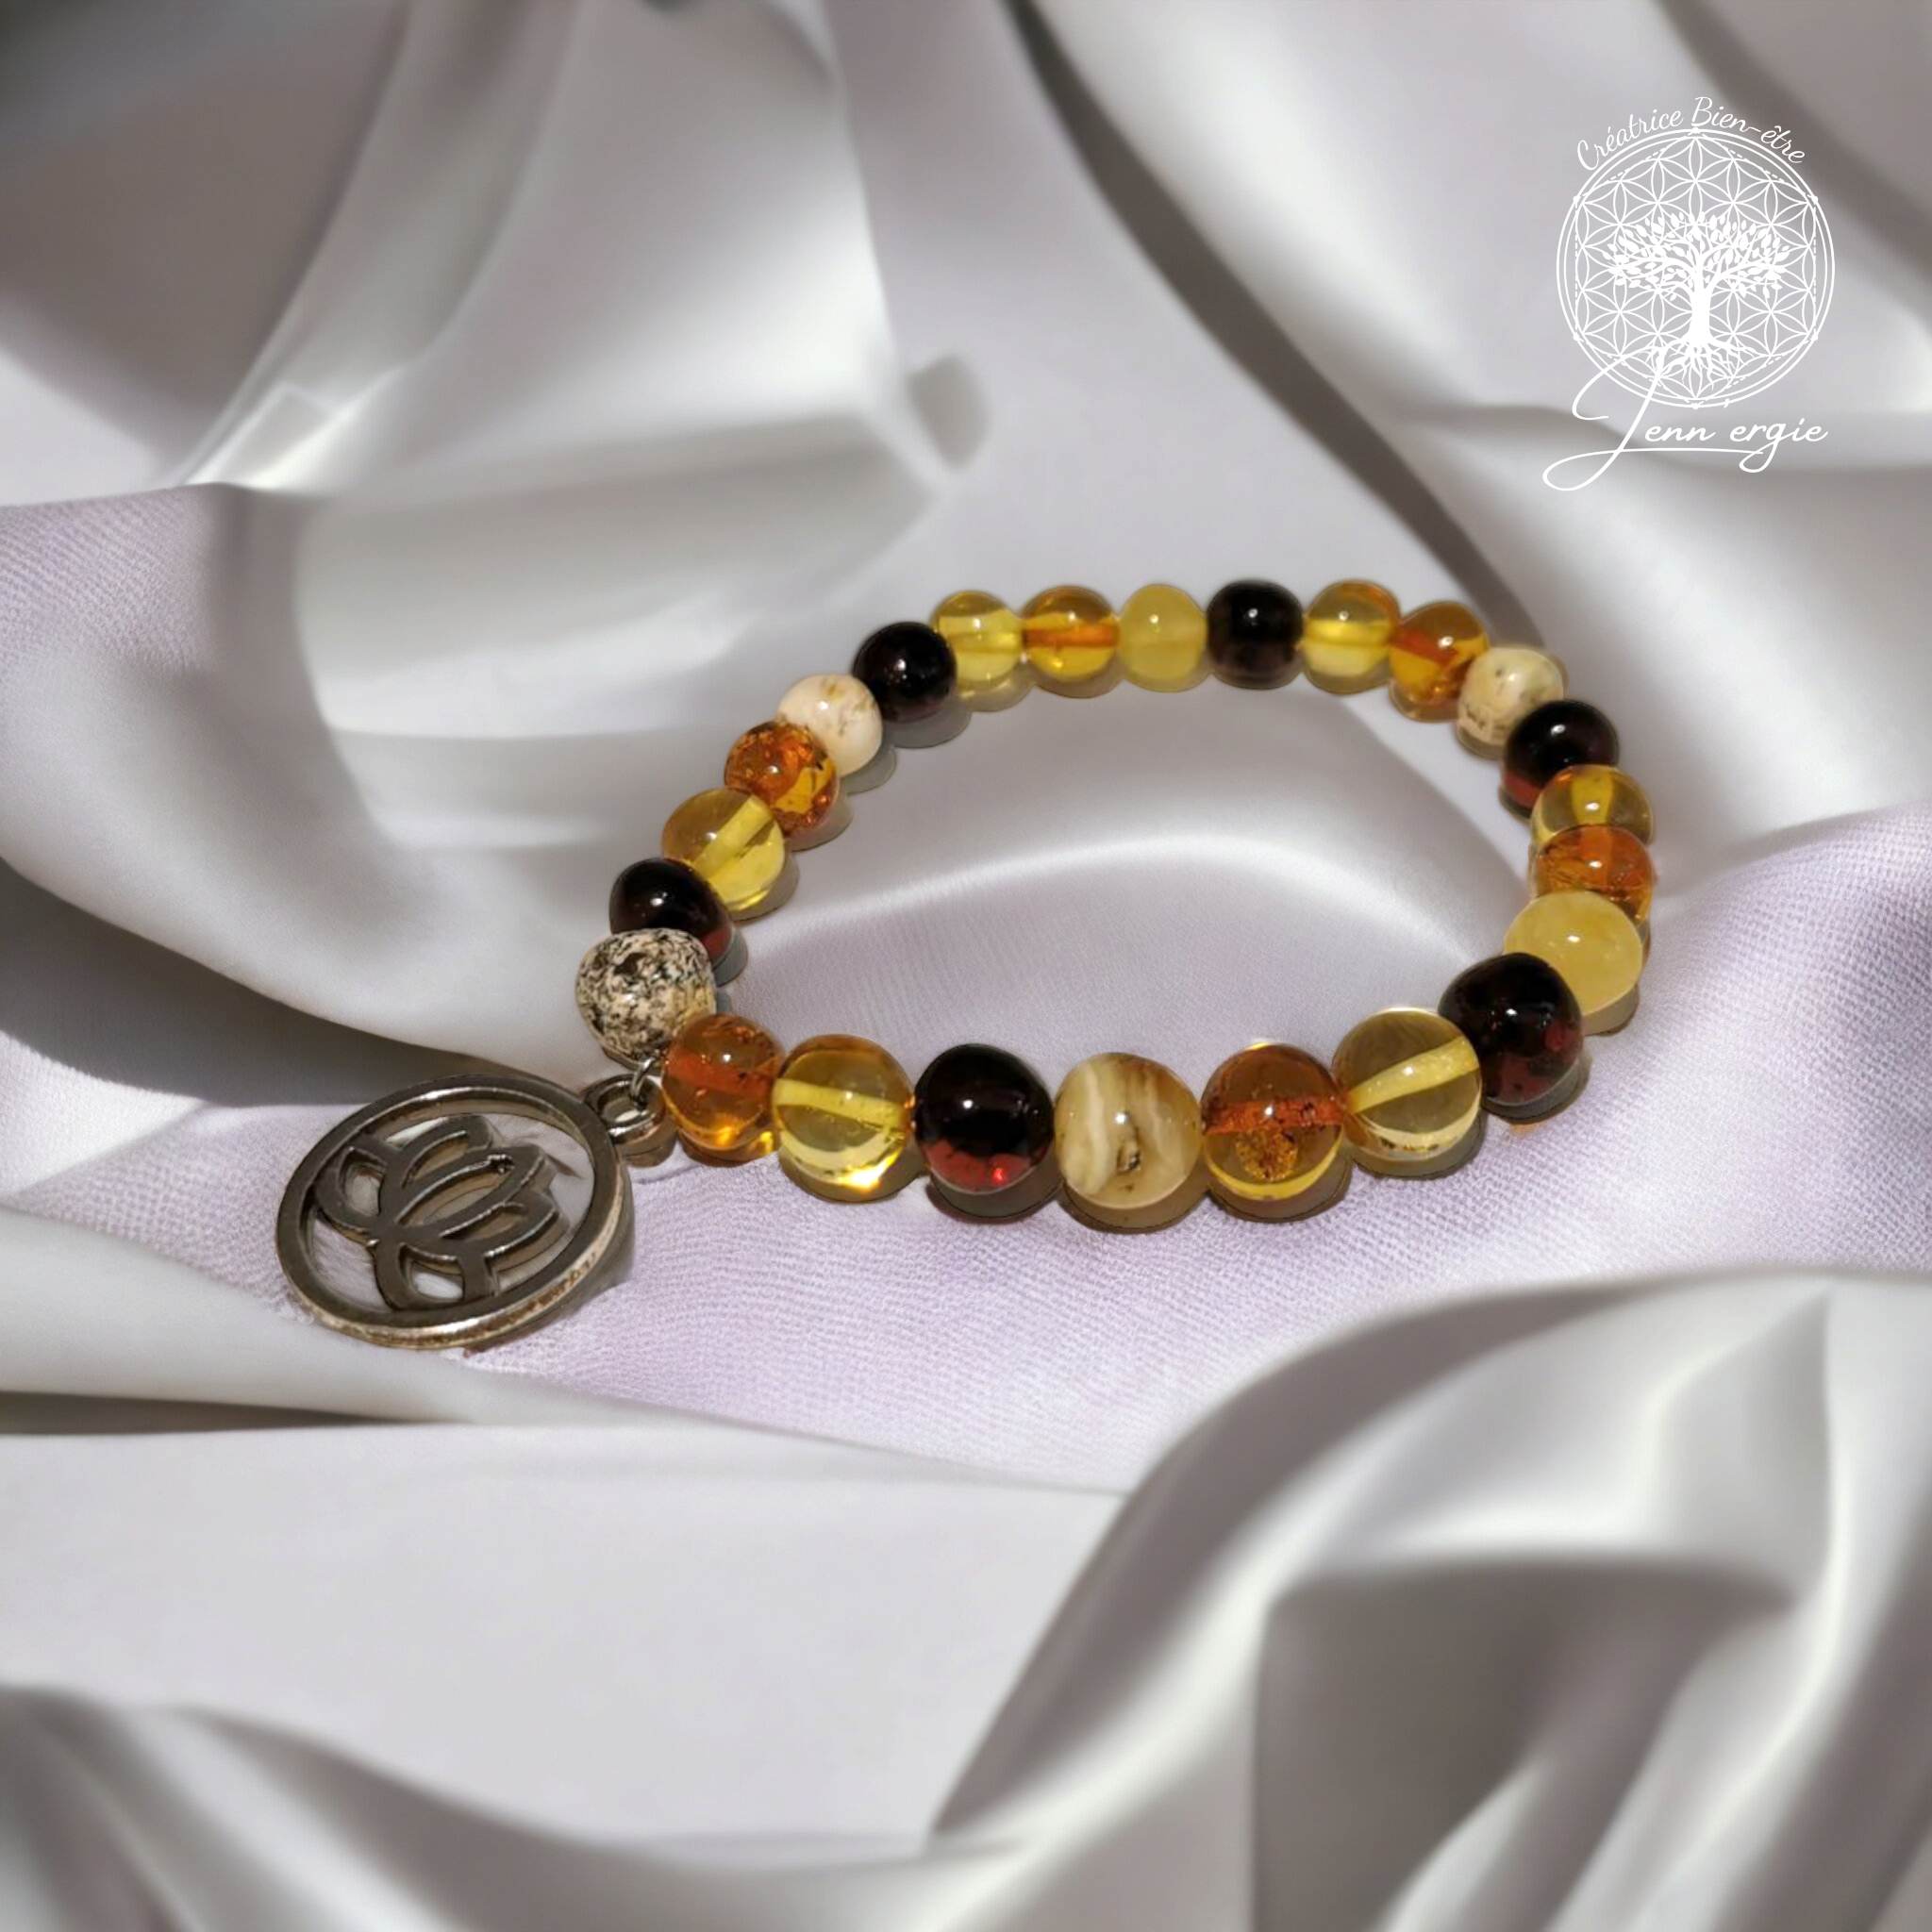 Bracelet Ambre Multicolore A & Lotus Sacré Jenn\'Ergie